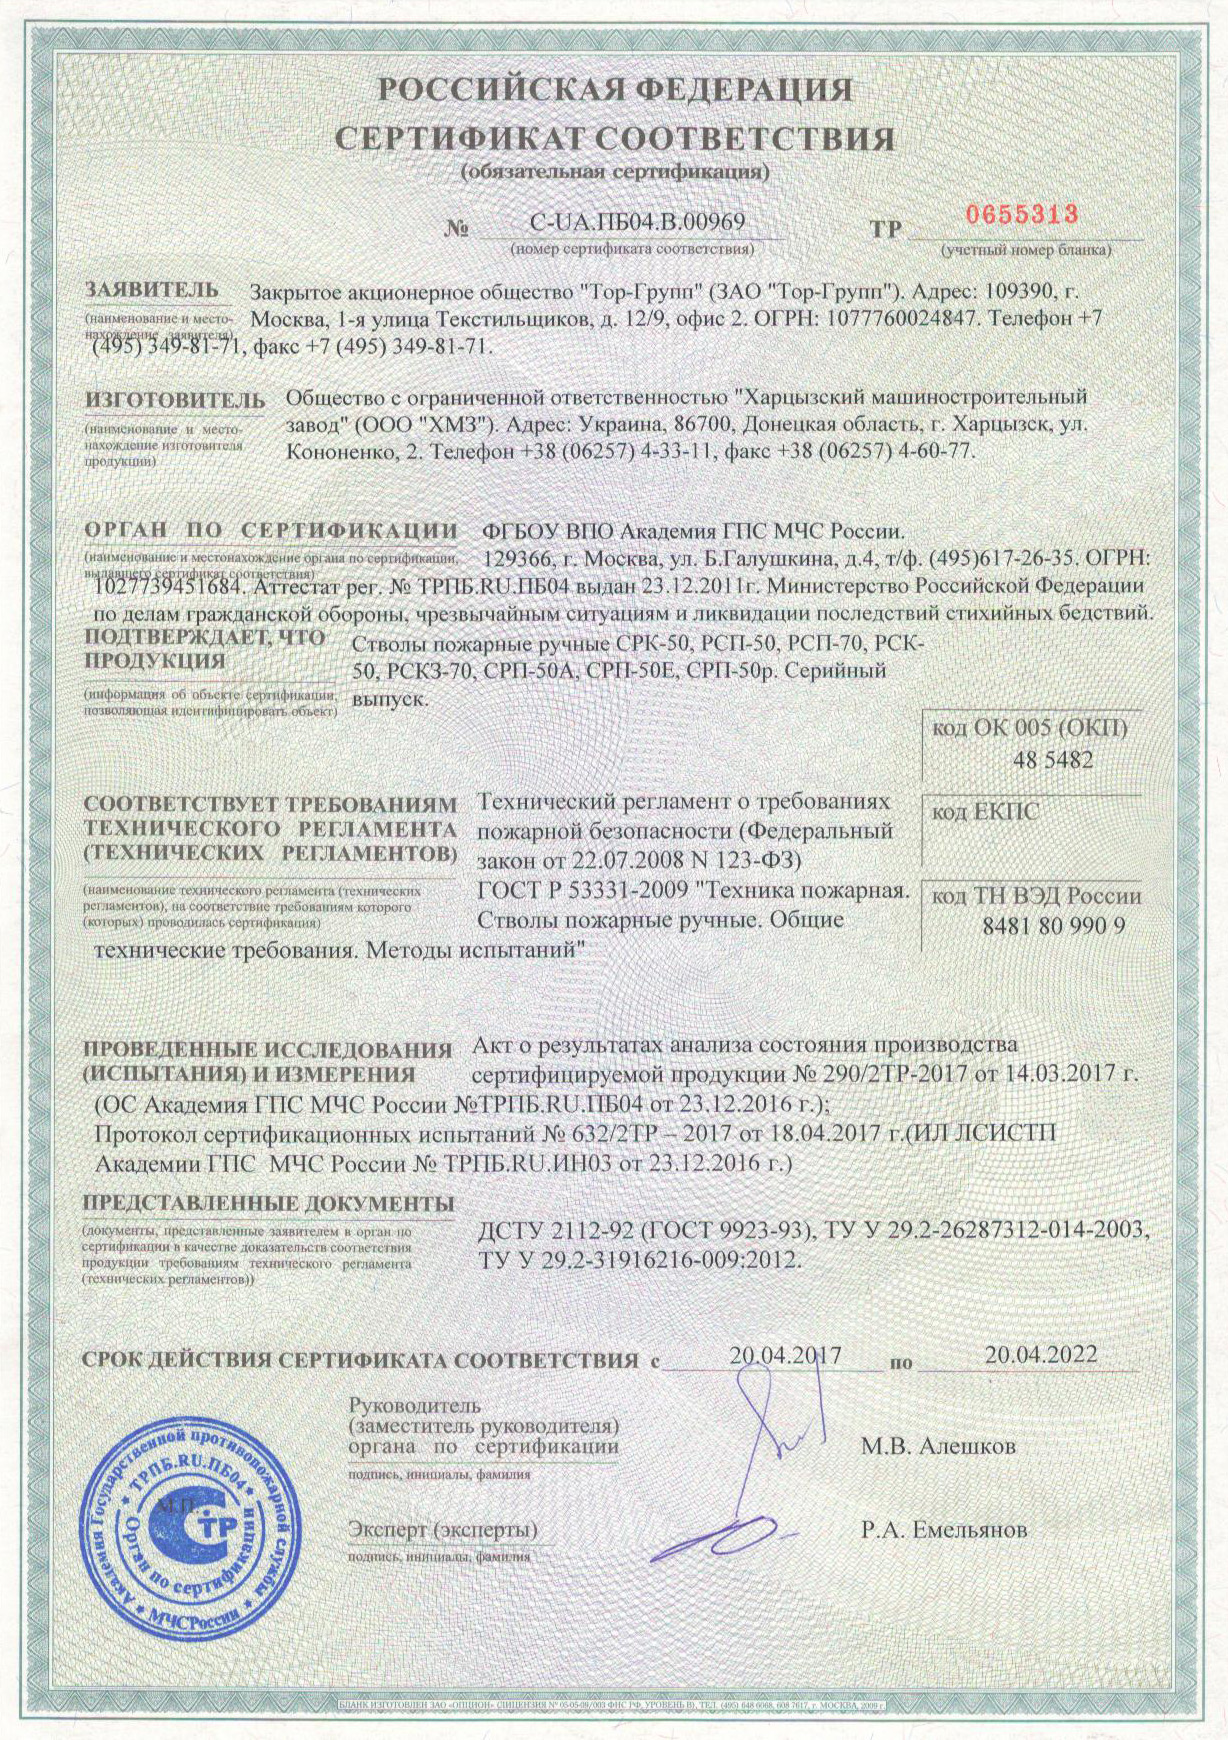 Скачать сертификат на комбинированные пожарные стволы, Харцызский машиностроительный завод, Украина